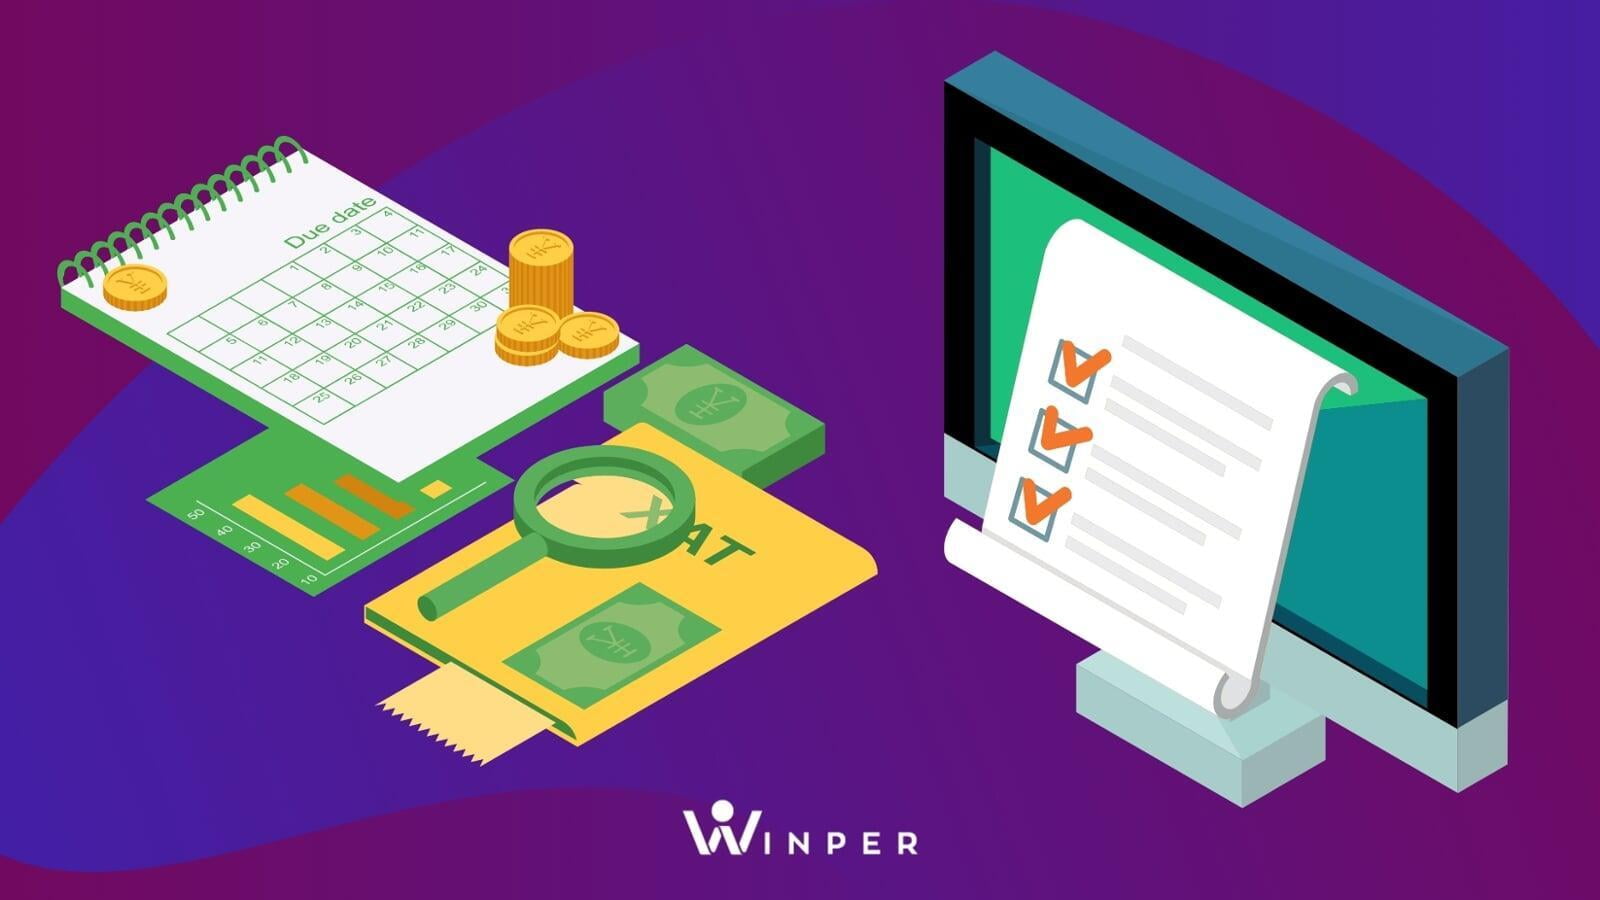 "Es un sistema de remuneraciones muy flexible y de fácil acceso a la información para quien opera WinPer"